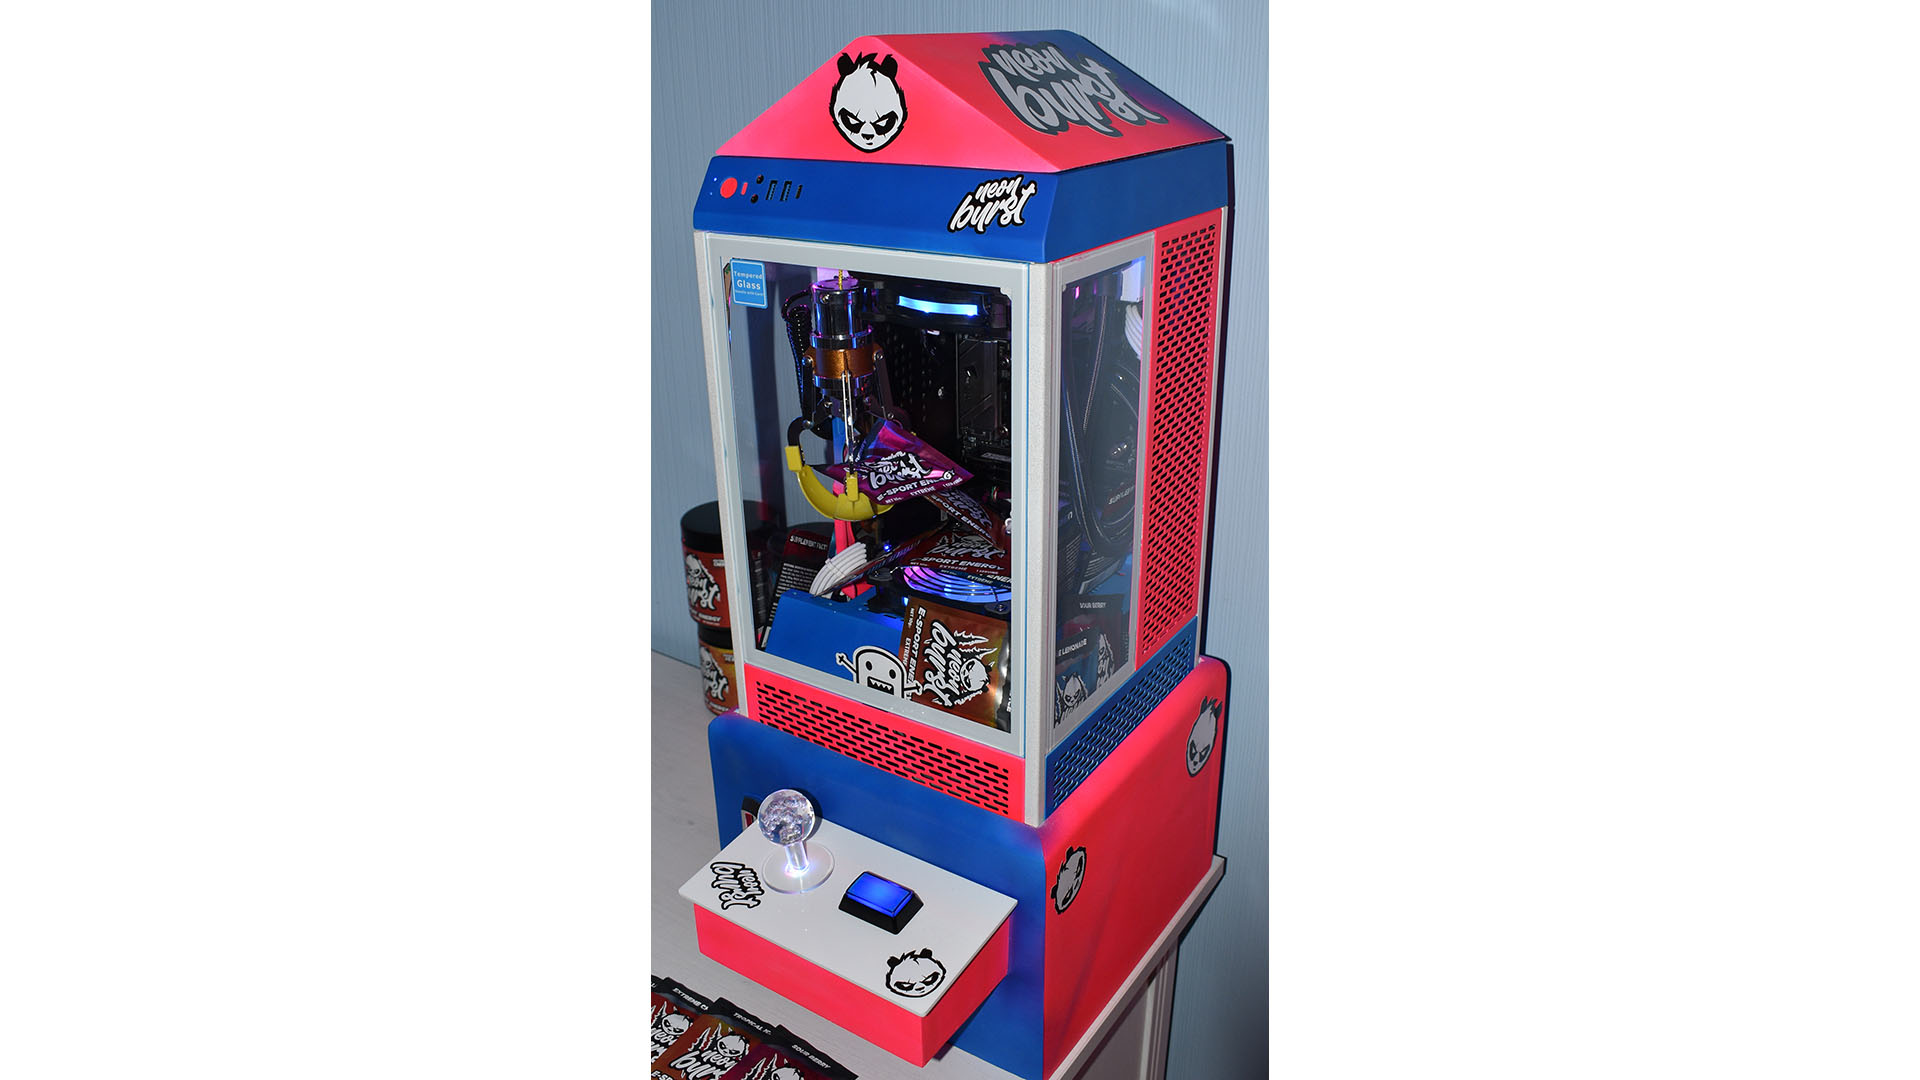 Le PC de jeu d'arcade griffe en bleu et rouge